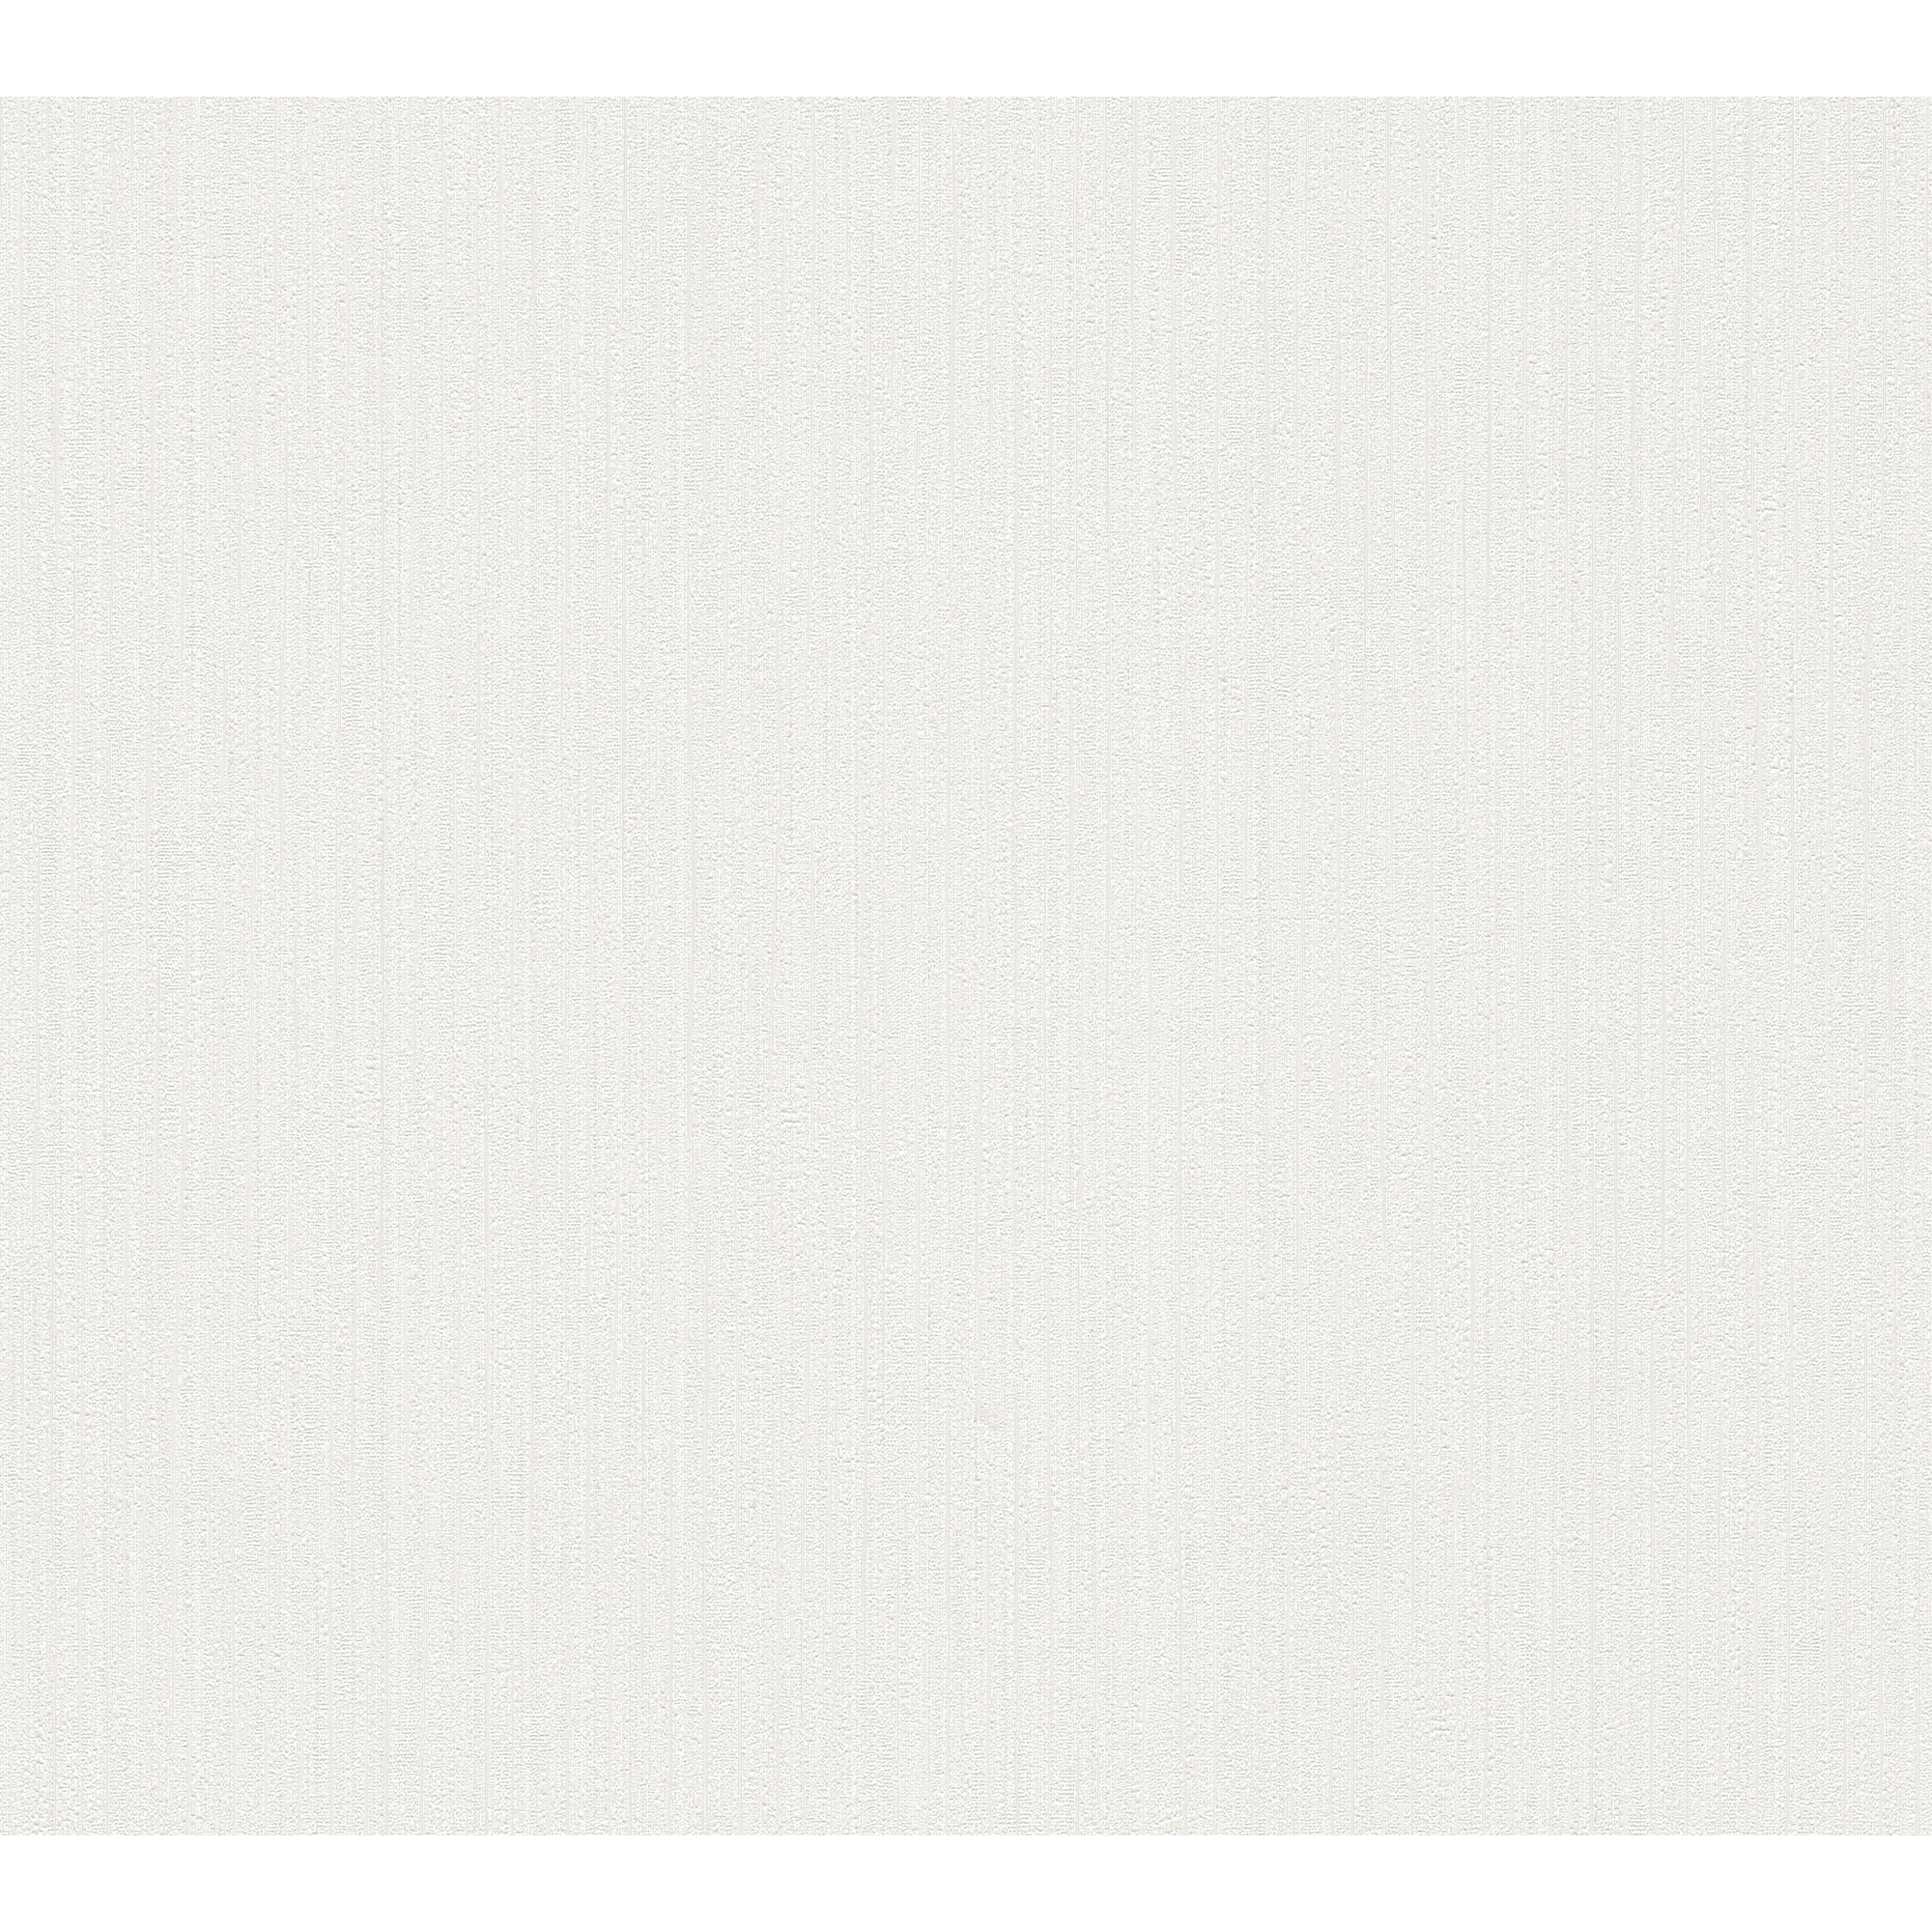 Vliestapete 'The BoS' Uni Streifenstruktur weiß 10,05 x 0,53 m + product picture